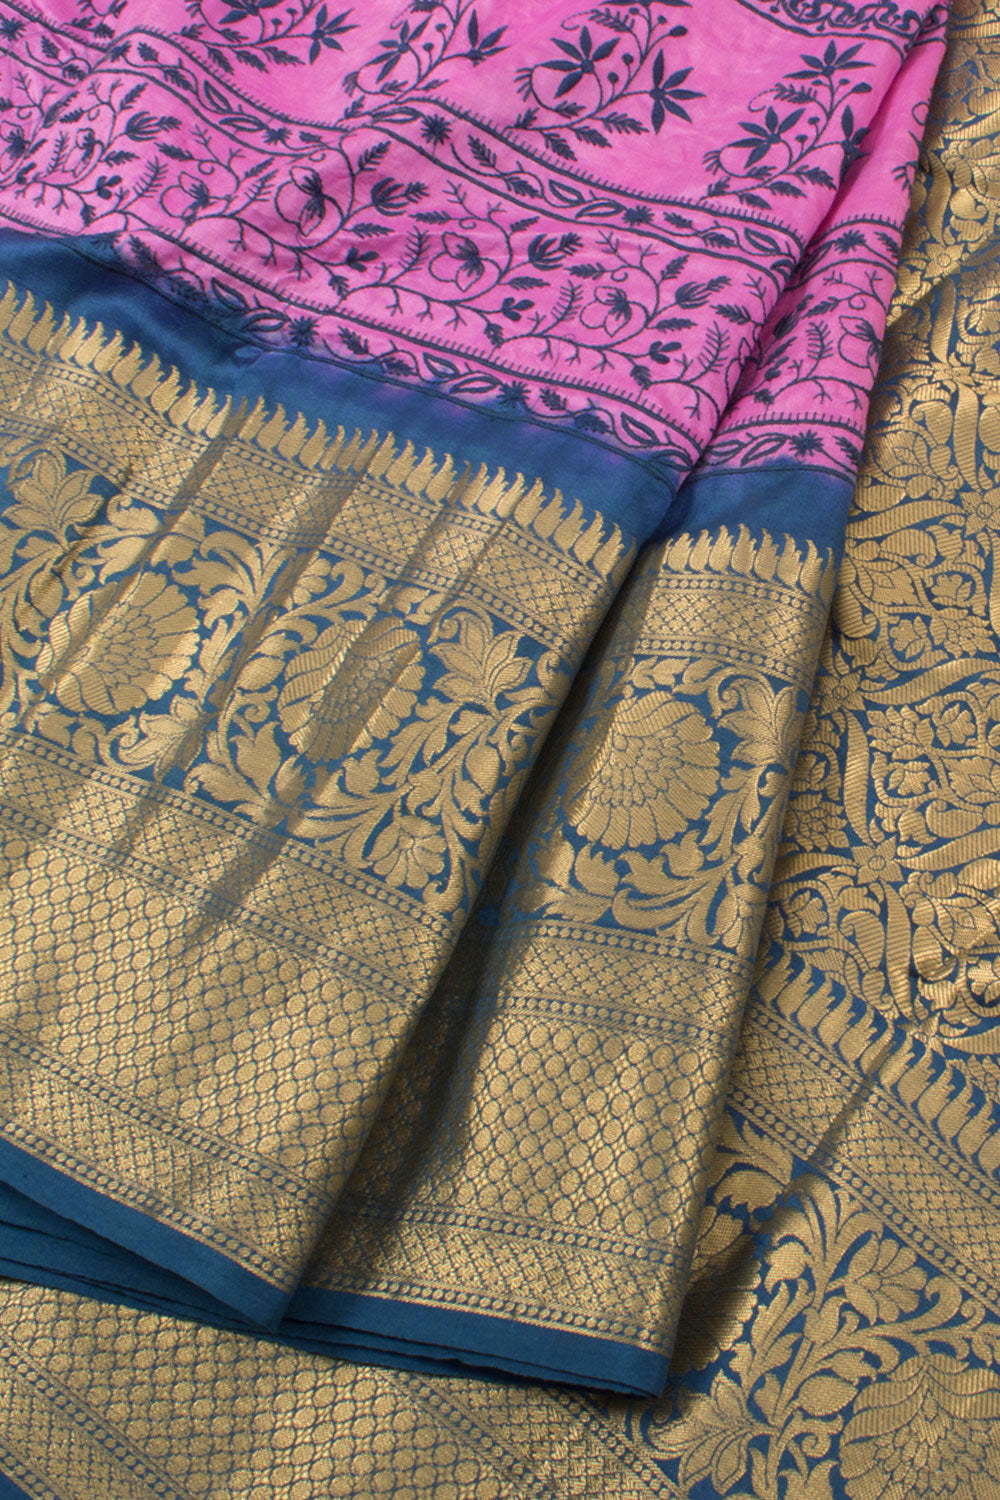 Embroidered Kanjivaram Pure Silk Saree 10058215